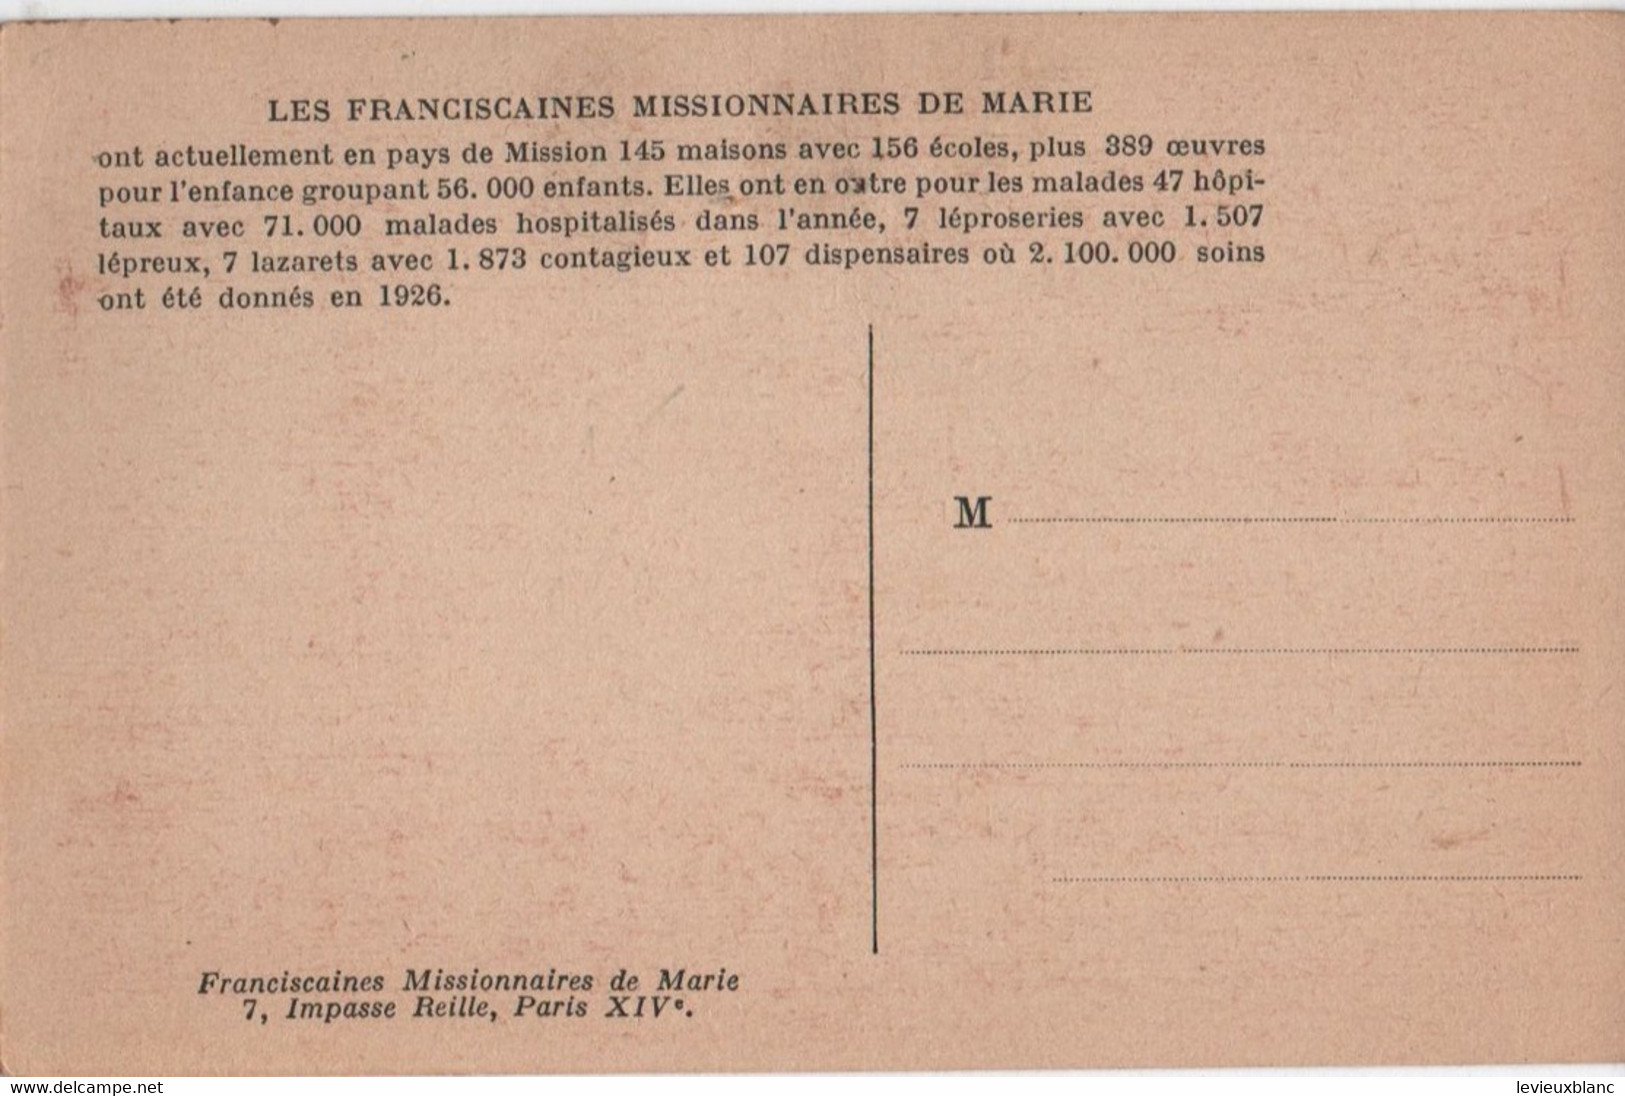 Carte Postale Ancienne/MAROC/Meknés/Franciscaines Missionnaires/Groupe De Fileuses Externes/Vers 1930-40      CPDIV346 - Meknès